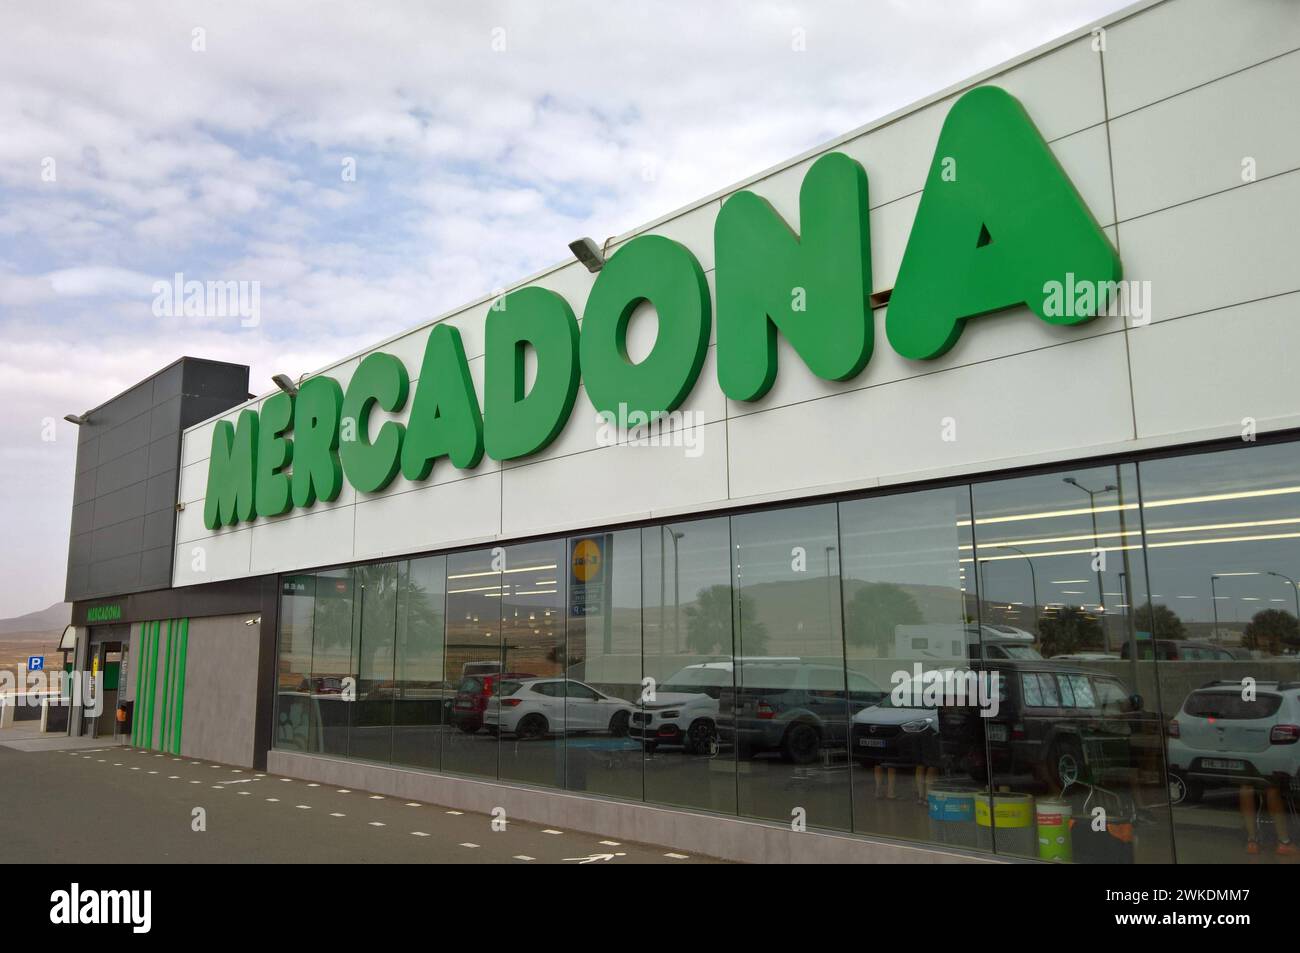 Mercadona S.A. ist die grösste Supermarktkette in spagnolo, der Hauptsitz befindet sich a Valencia. In den Märkten und im Internet vertreibt das Unternehmen Lebensmittel und Güter des täglichen Bedarfs. DAS Unternehmen befindet sich a Familienbesitz. In allen Provinzen des Landes vertreten gibt es insgesamt 1636 Filialen - Stand Oktober 2020 - mit durchschnittlich 1300 Quadratmetern Verkaufsfläche. Der Marktanteil von Mercadona in Spanien liegt bei über 22 Prozent. Foto: Marcadona Supermercado - Supermarkt auf Fuerteventura, Kanarische Inseln *** Mercadona S A è la più grande catena di supermercati Foto Stock